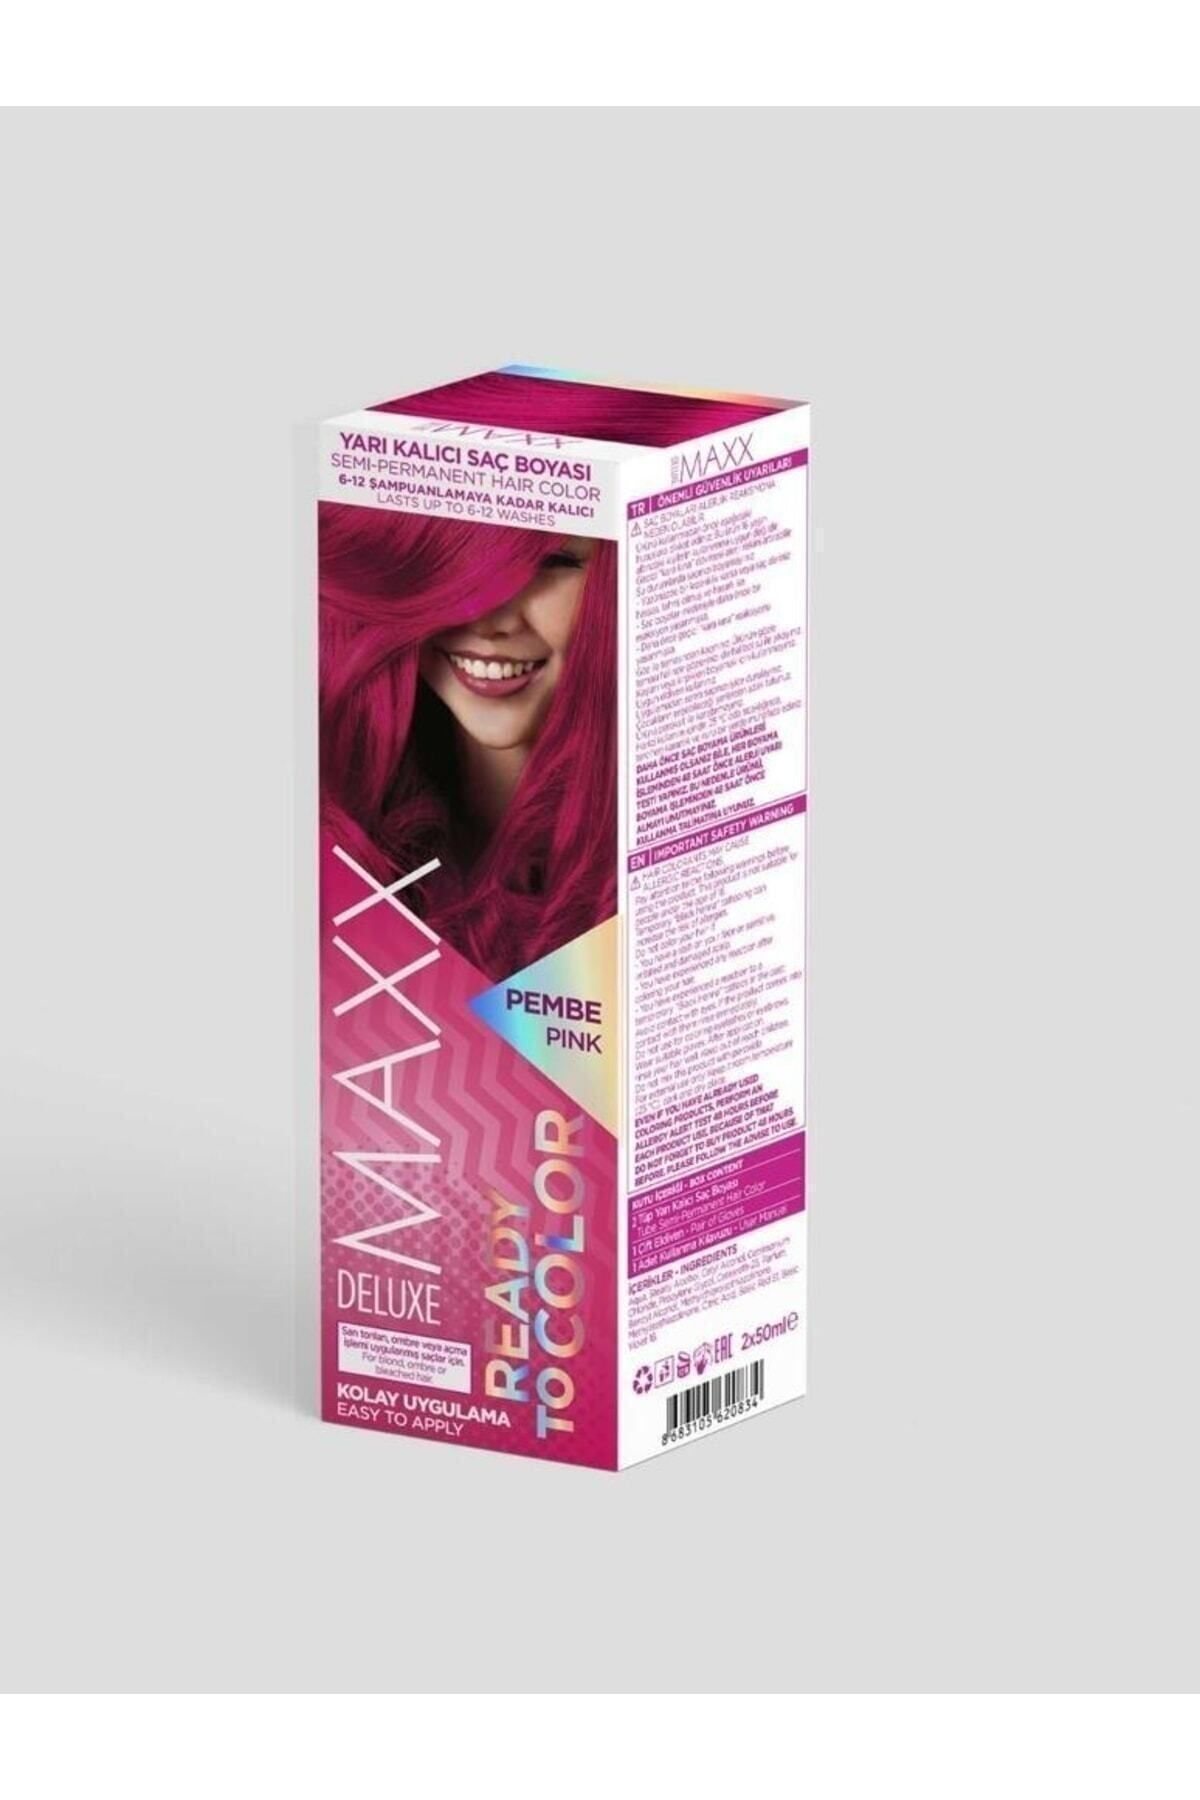 MAXX DELUXE Ready To Color Yarı Kalıcı Saç Boyası - Pembe